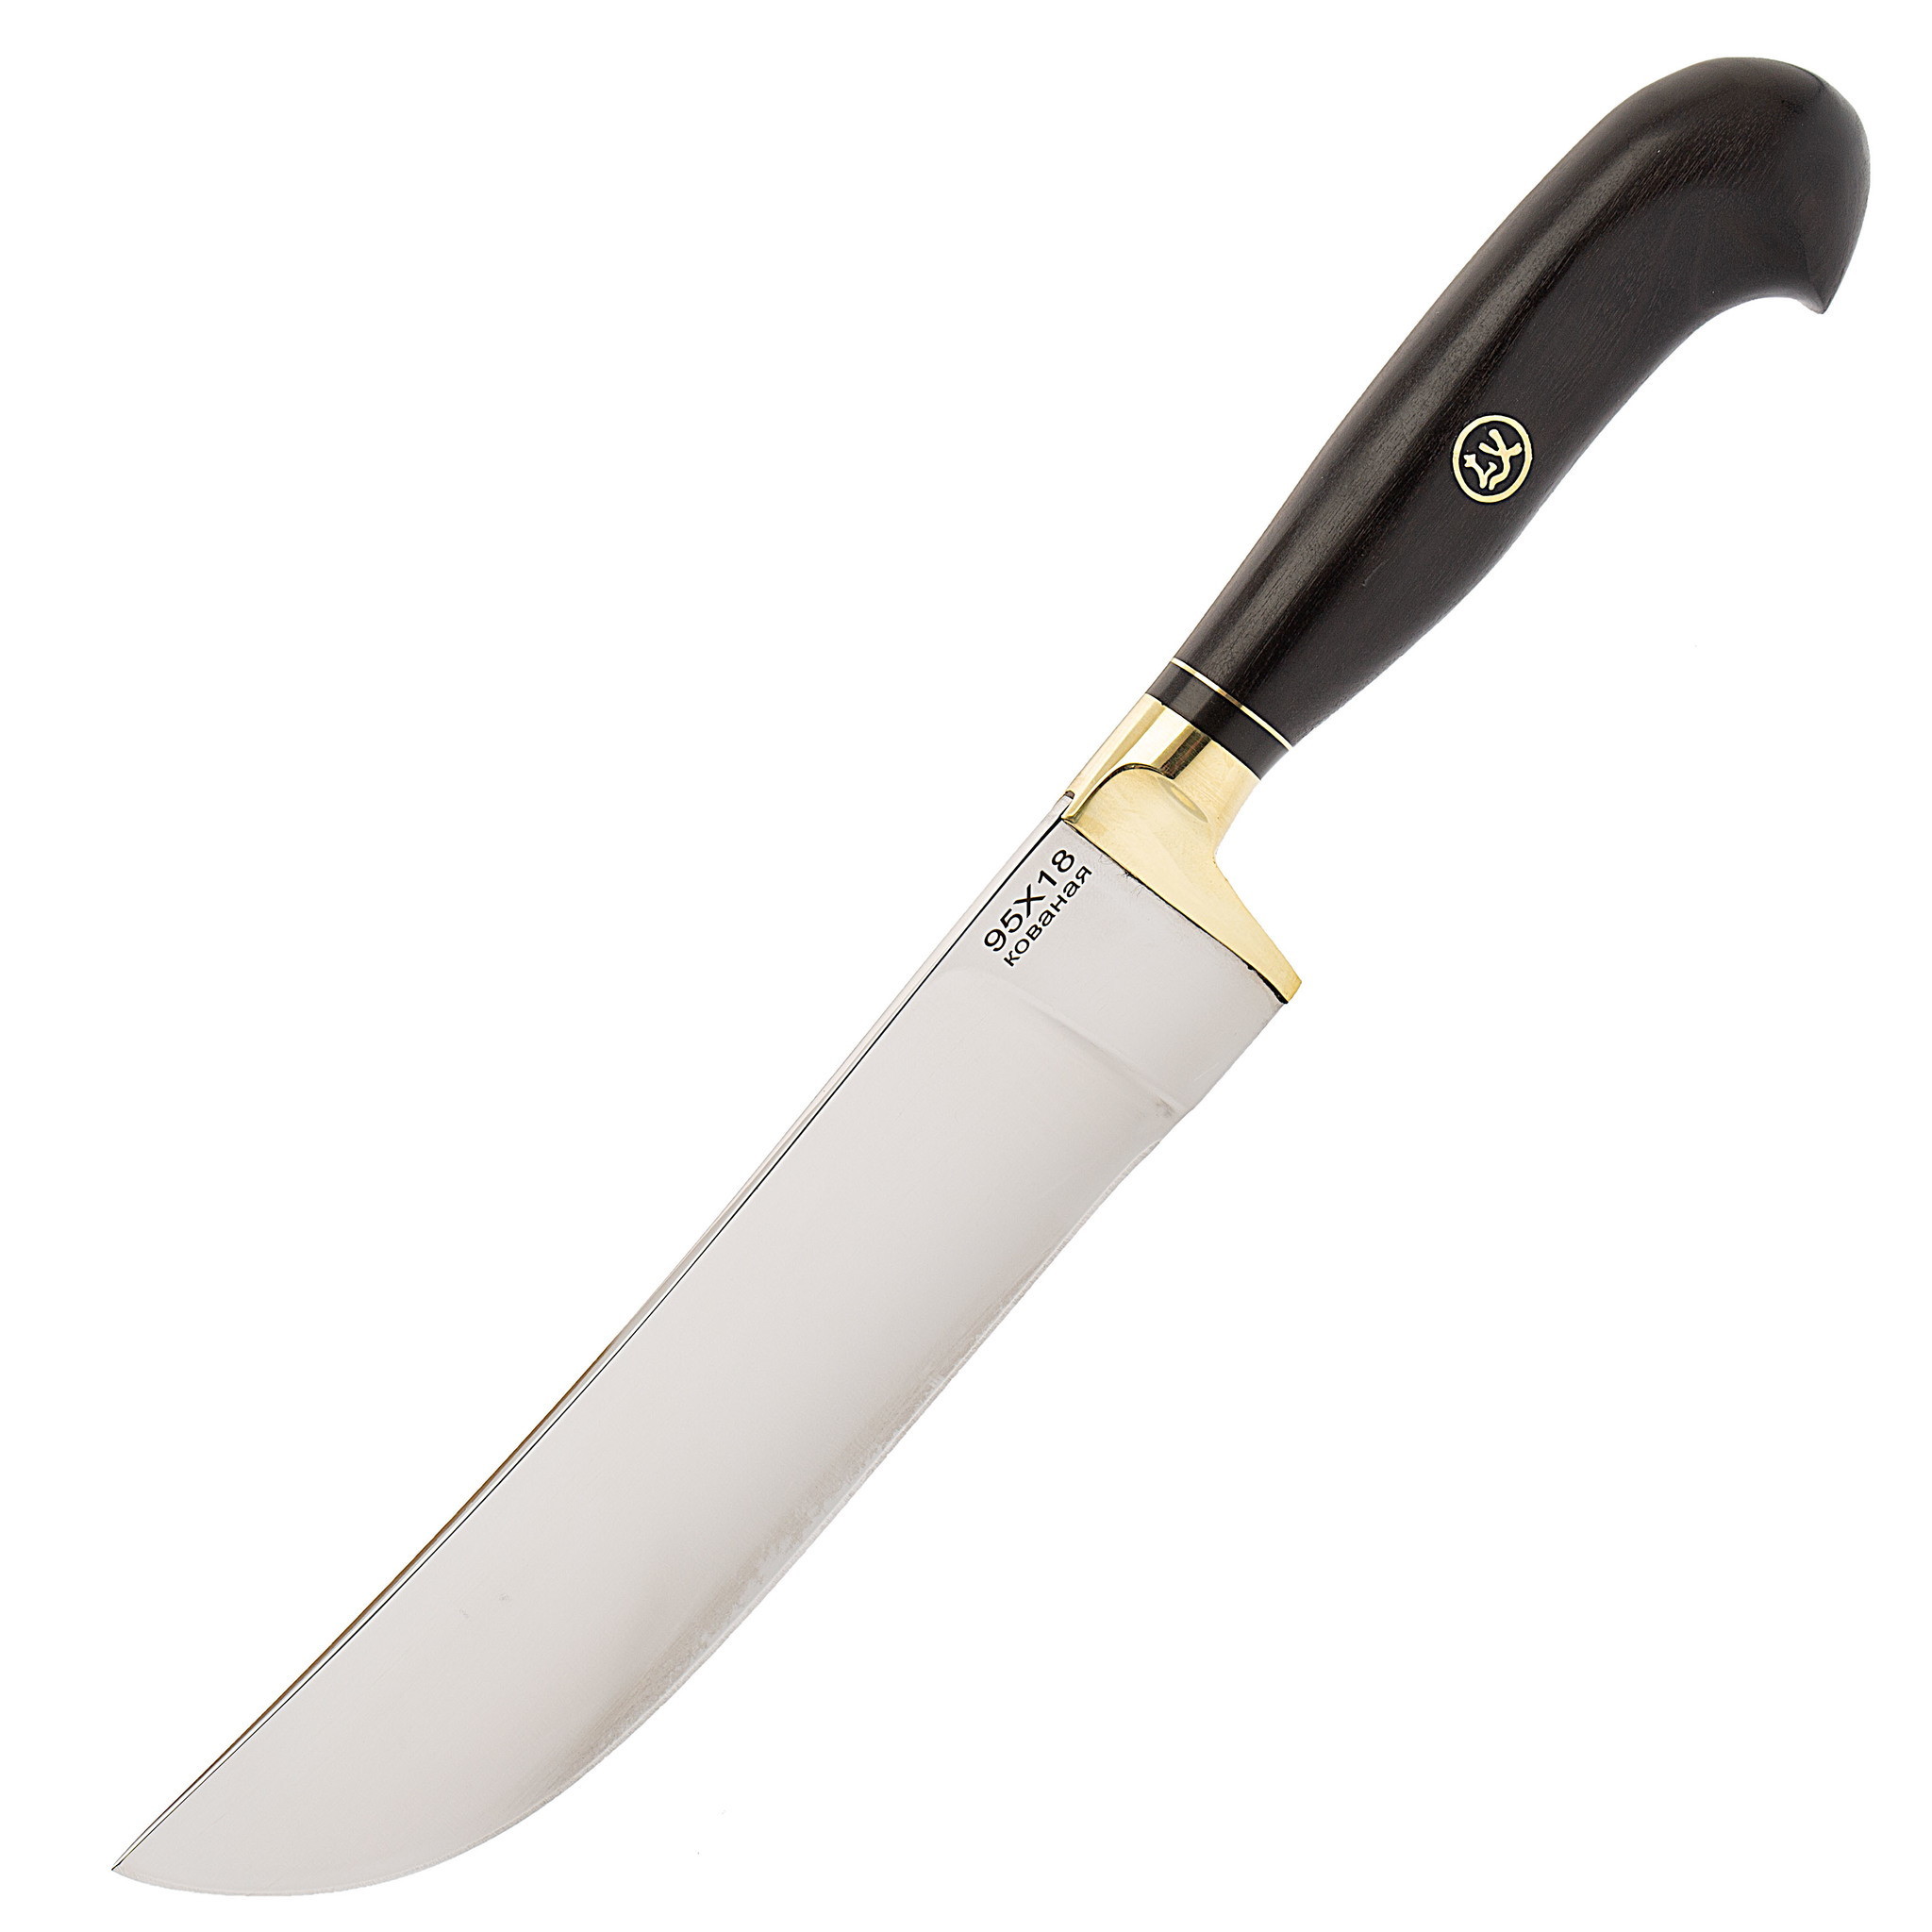 Нож Узбекский, сталь 95х18, граб нож спецназ вишня сталь 95х18 резной граб